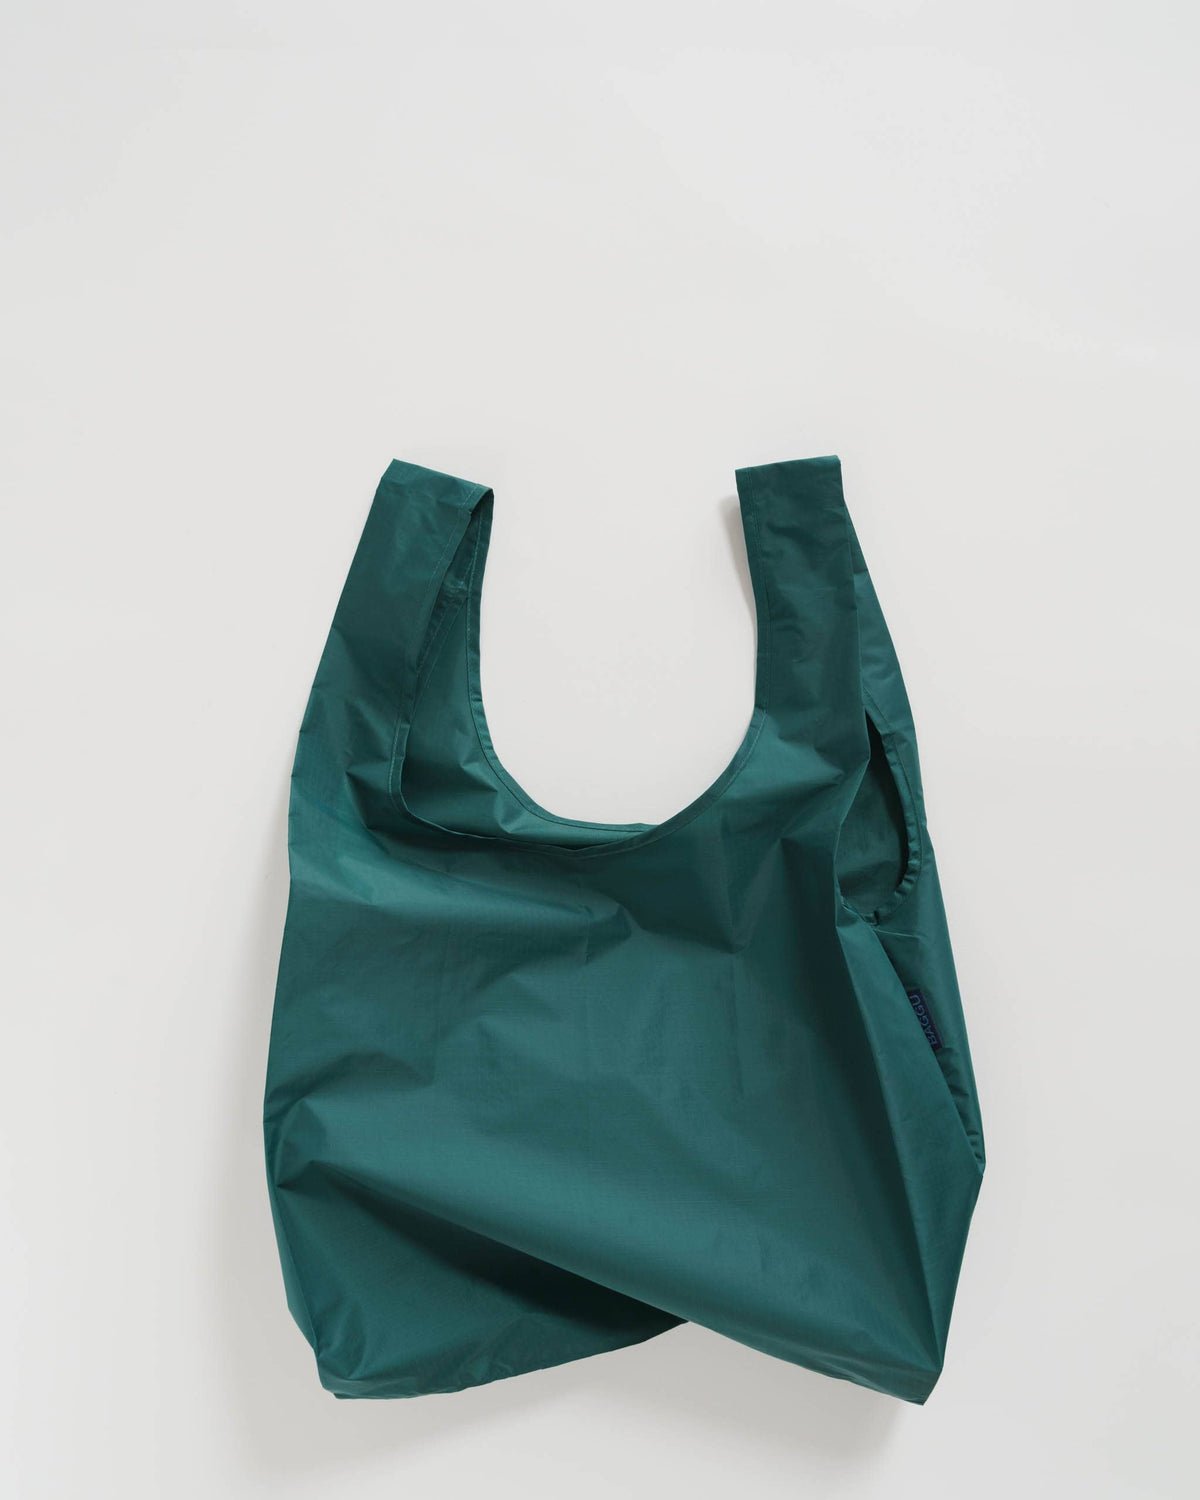 Baggu - Standard Reusable Bag